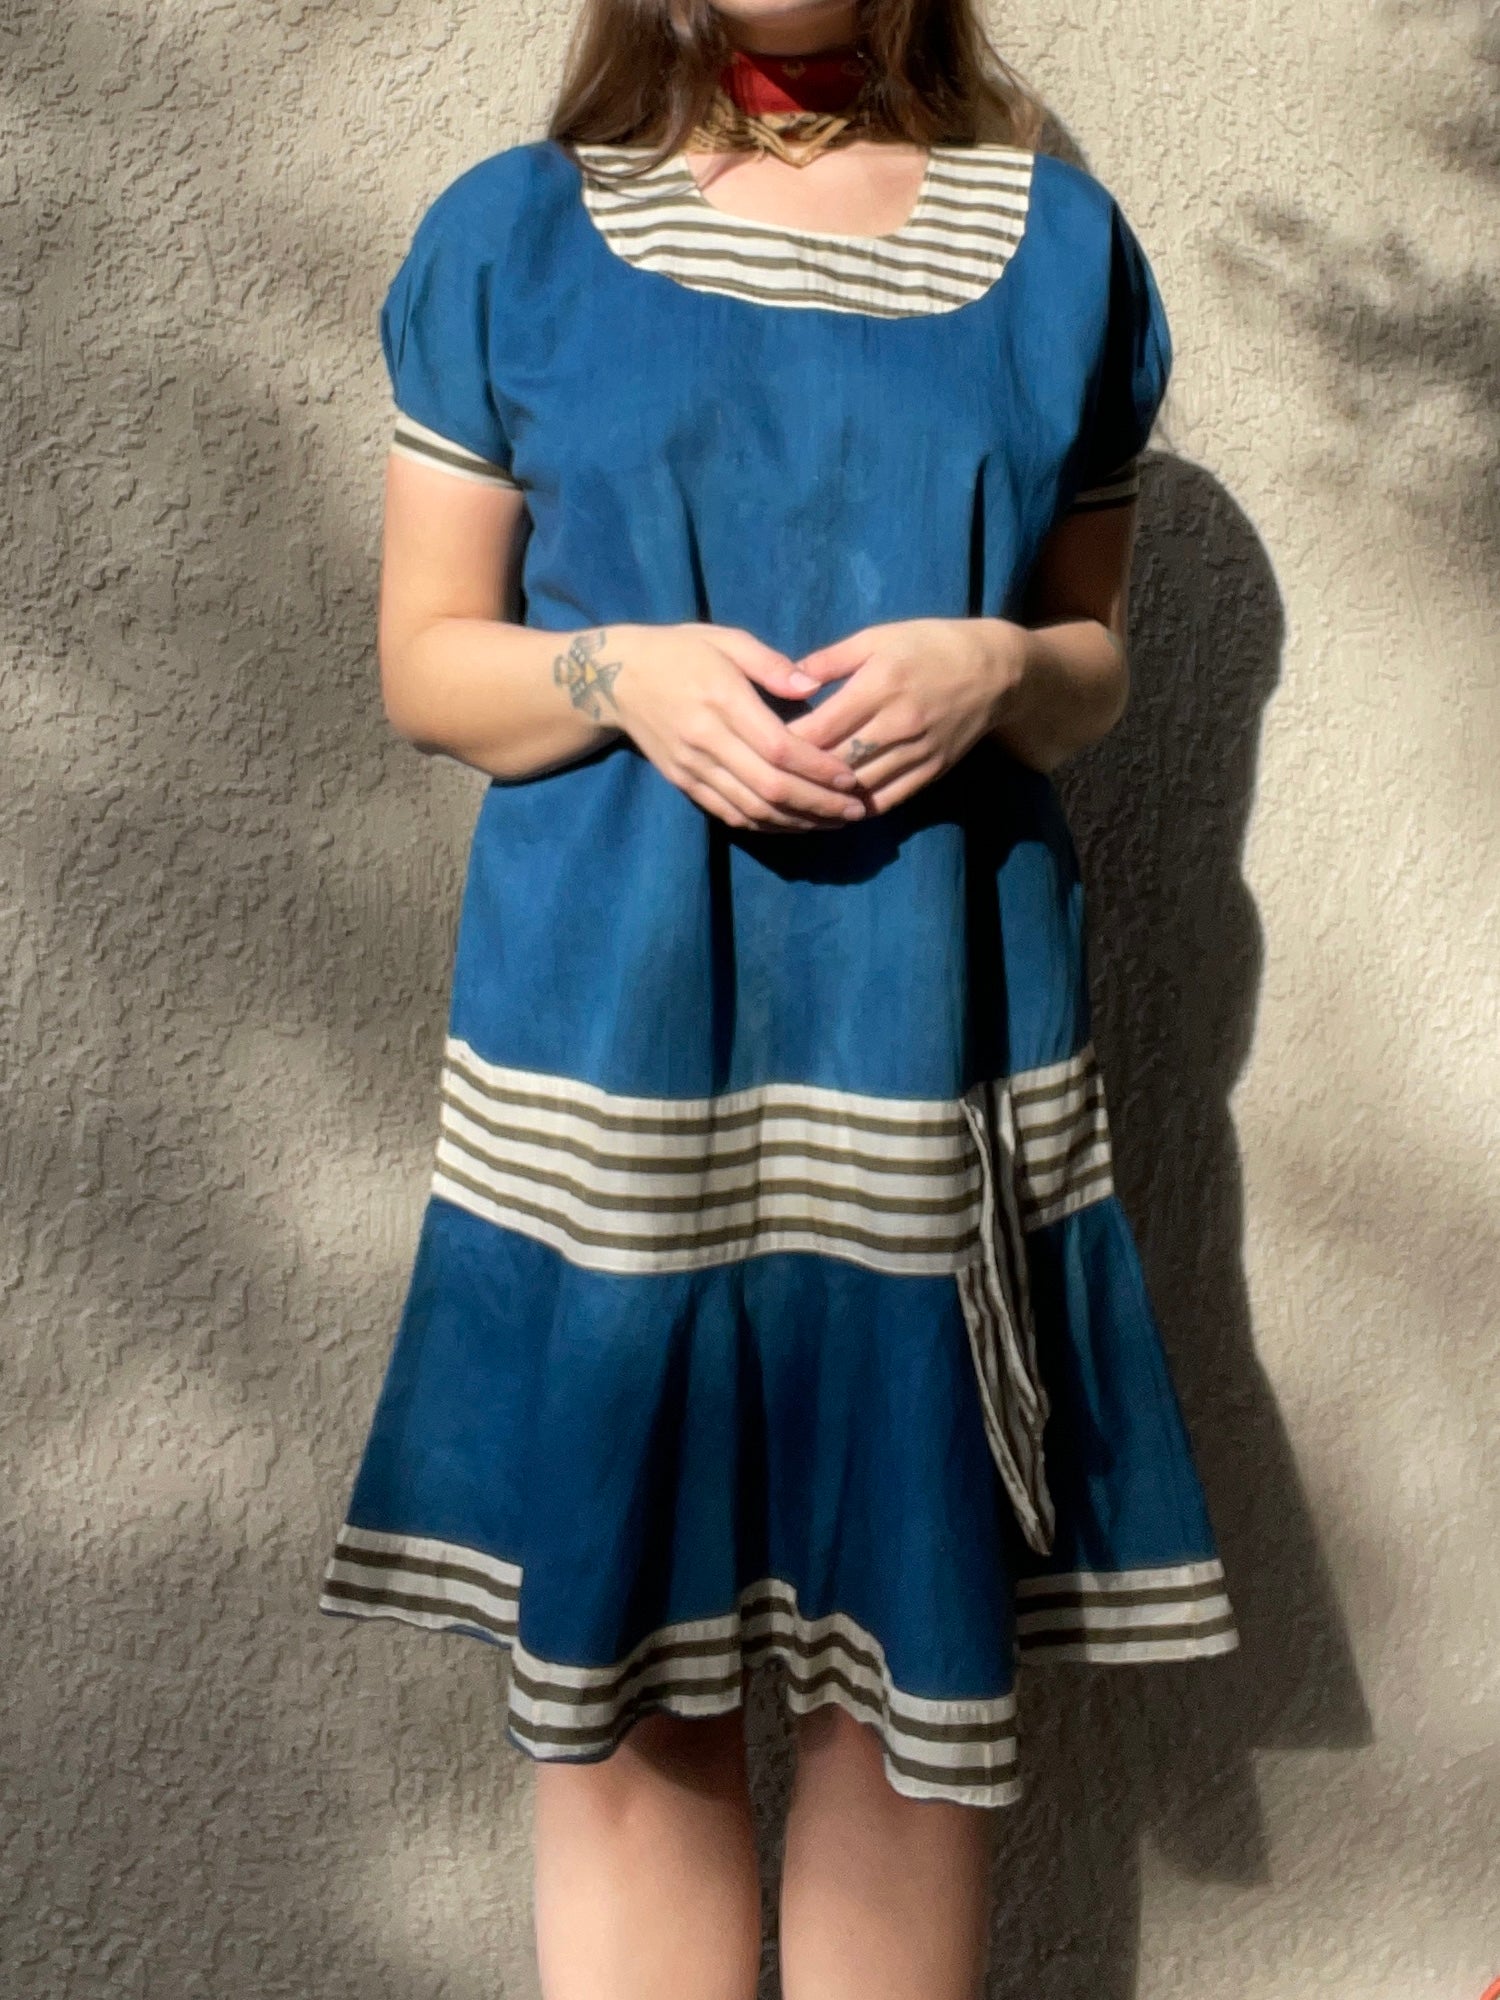 Antique Indigo & Stripe Cotton Bathing Suit Dress